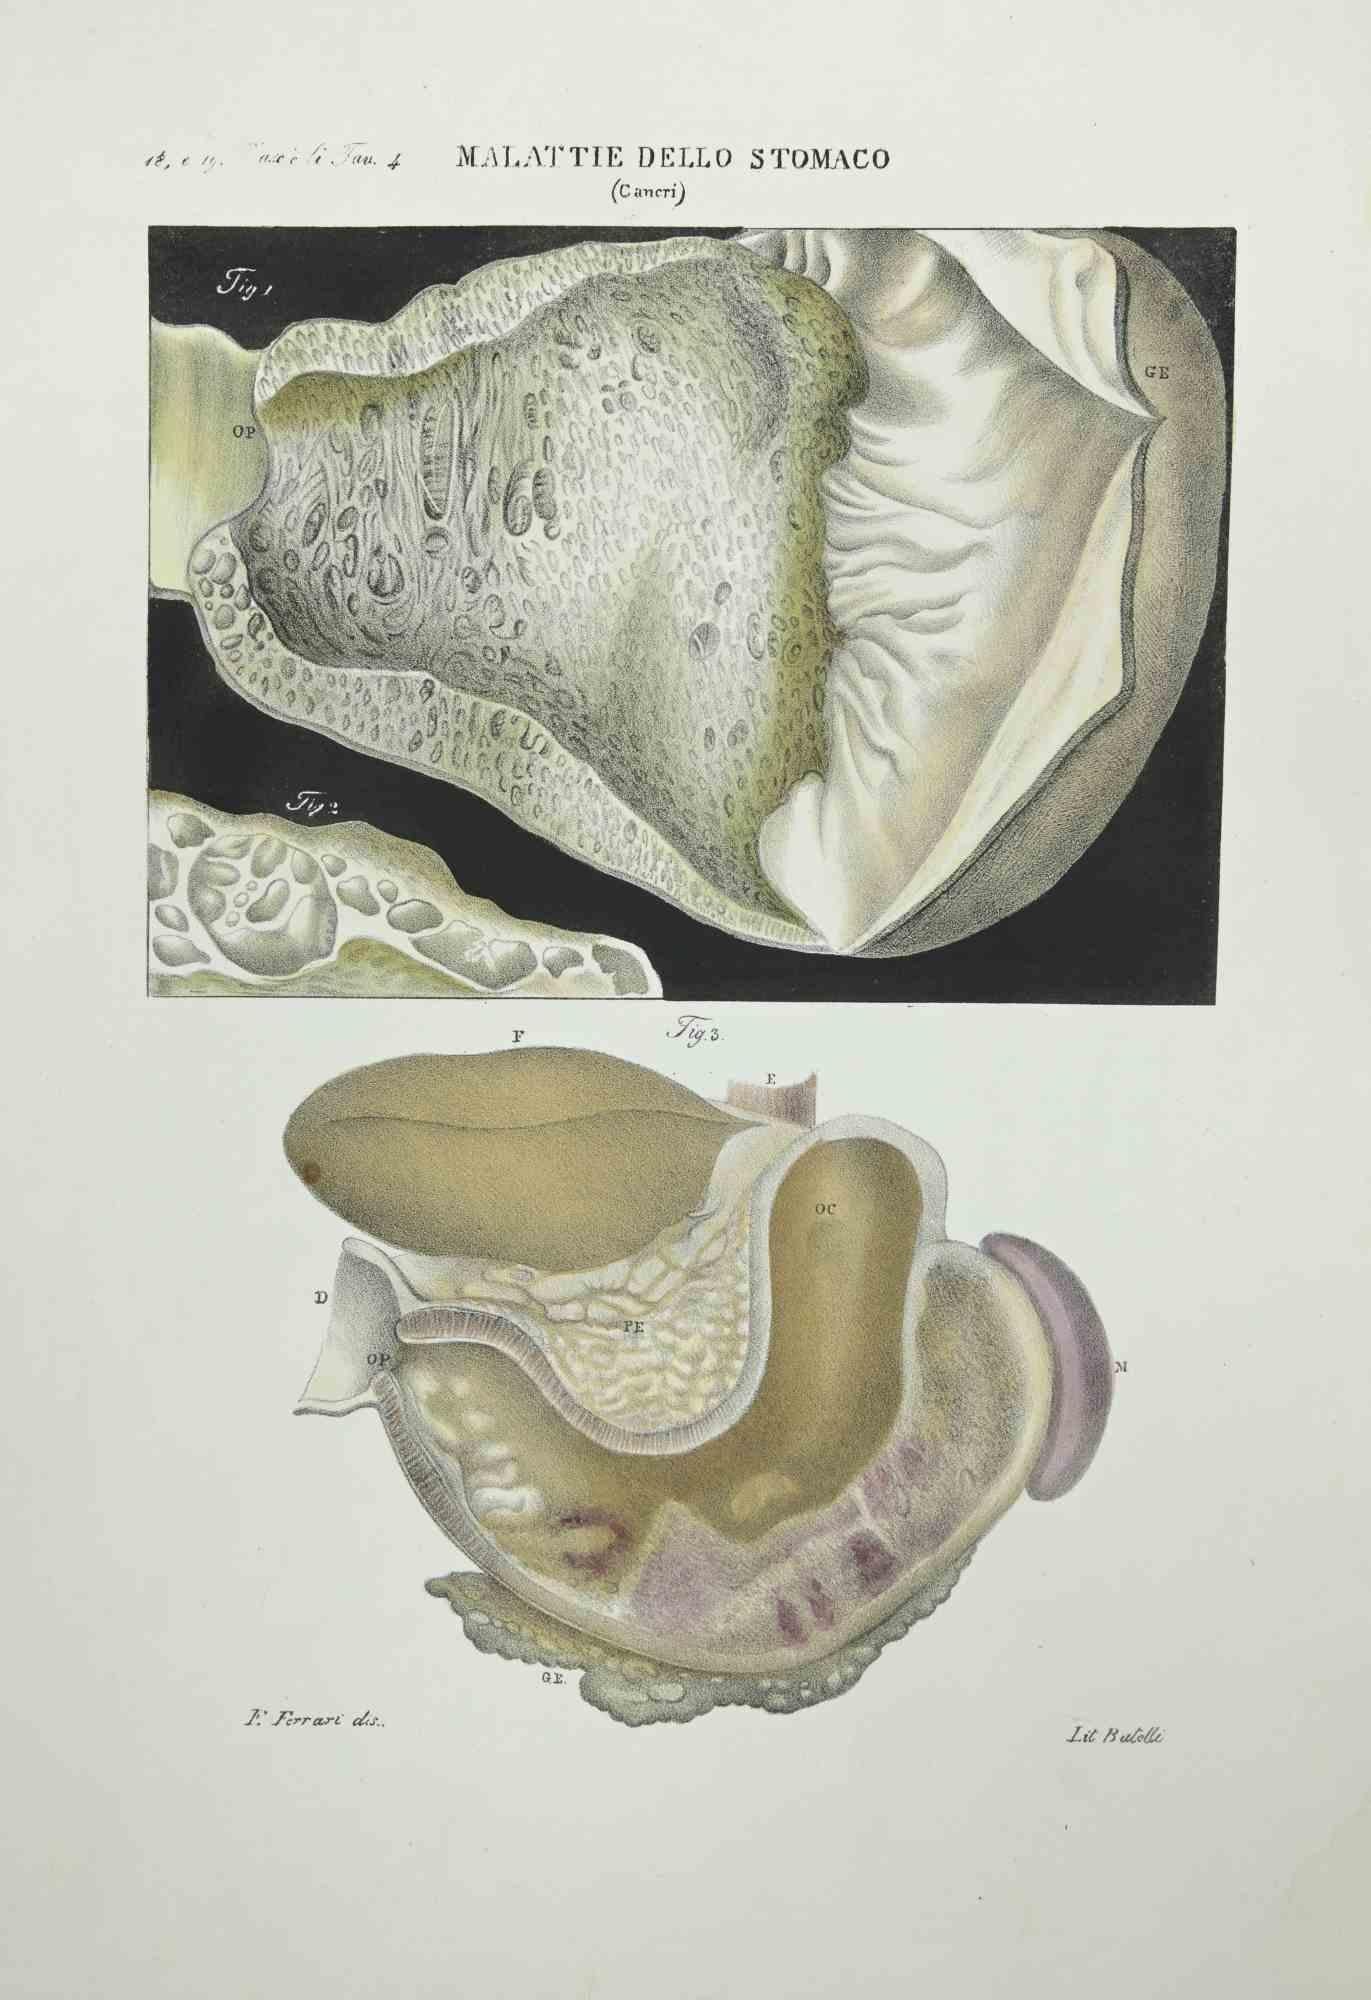 Stomach Diseases ist eine handkolorierte Lithographie von Ottavio Muzzi für die Ausgabe von Antoine Chazal, Human Anatomy, Printers Batelli and Ridolfi, 1843.

Das Werk gehört zum Atlante generale della anatomia patologica del corpo umano von Jean